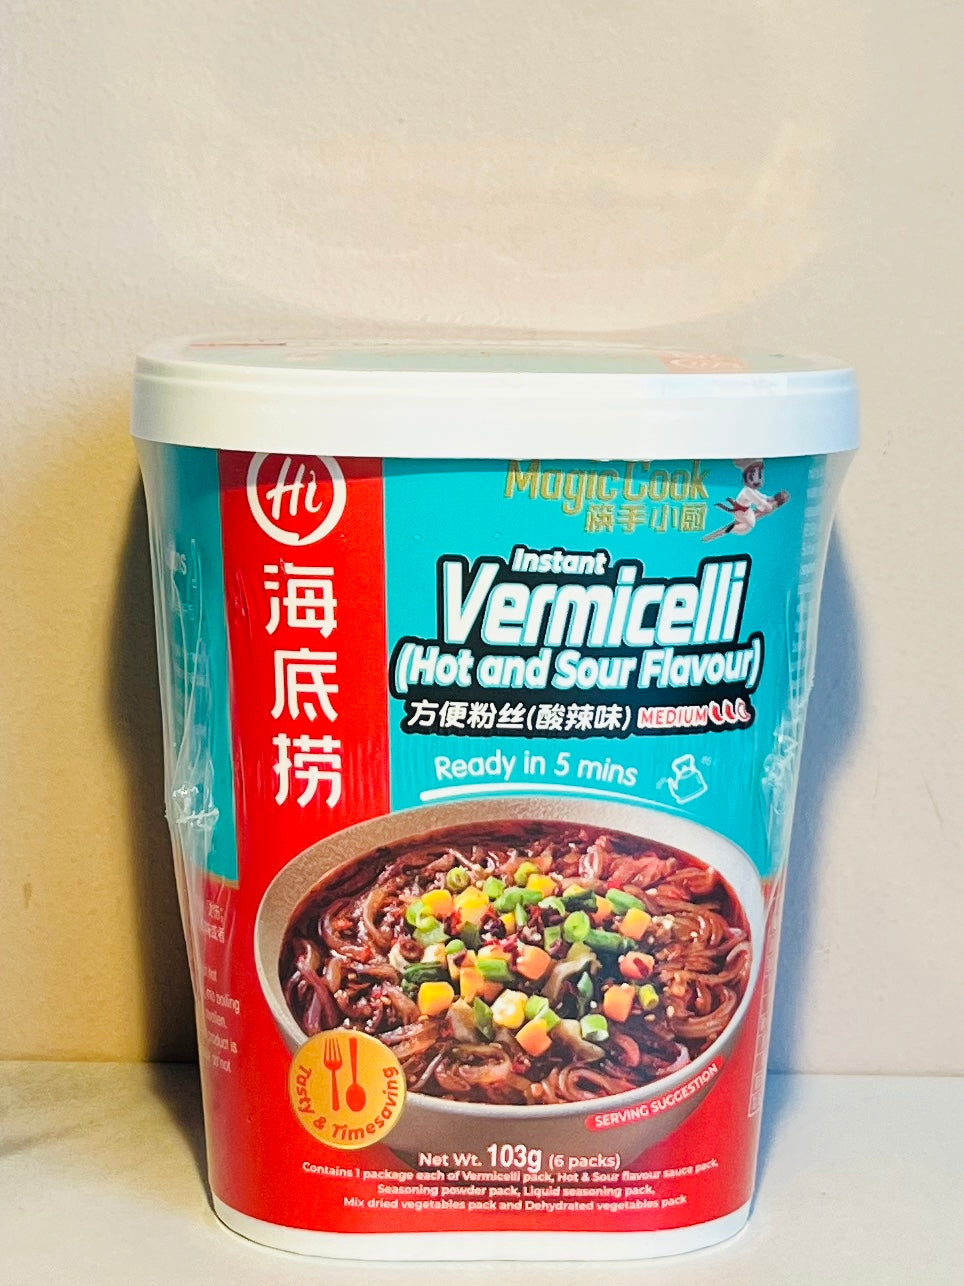 海底捞方便粉丝酸辣味103g HDL Instant Vermicelli Hot & Sour Flavour